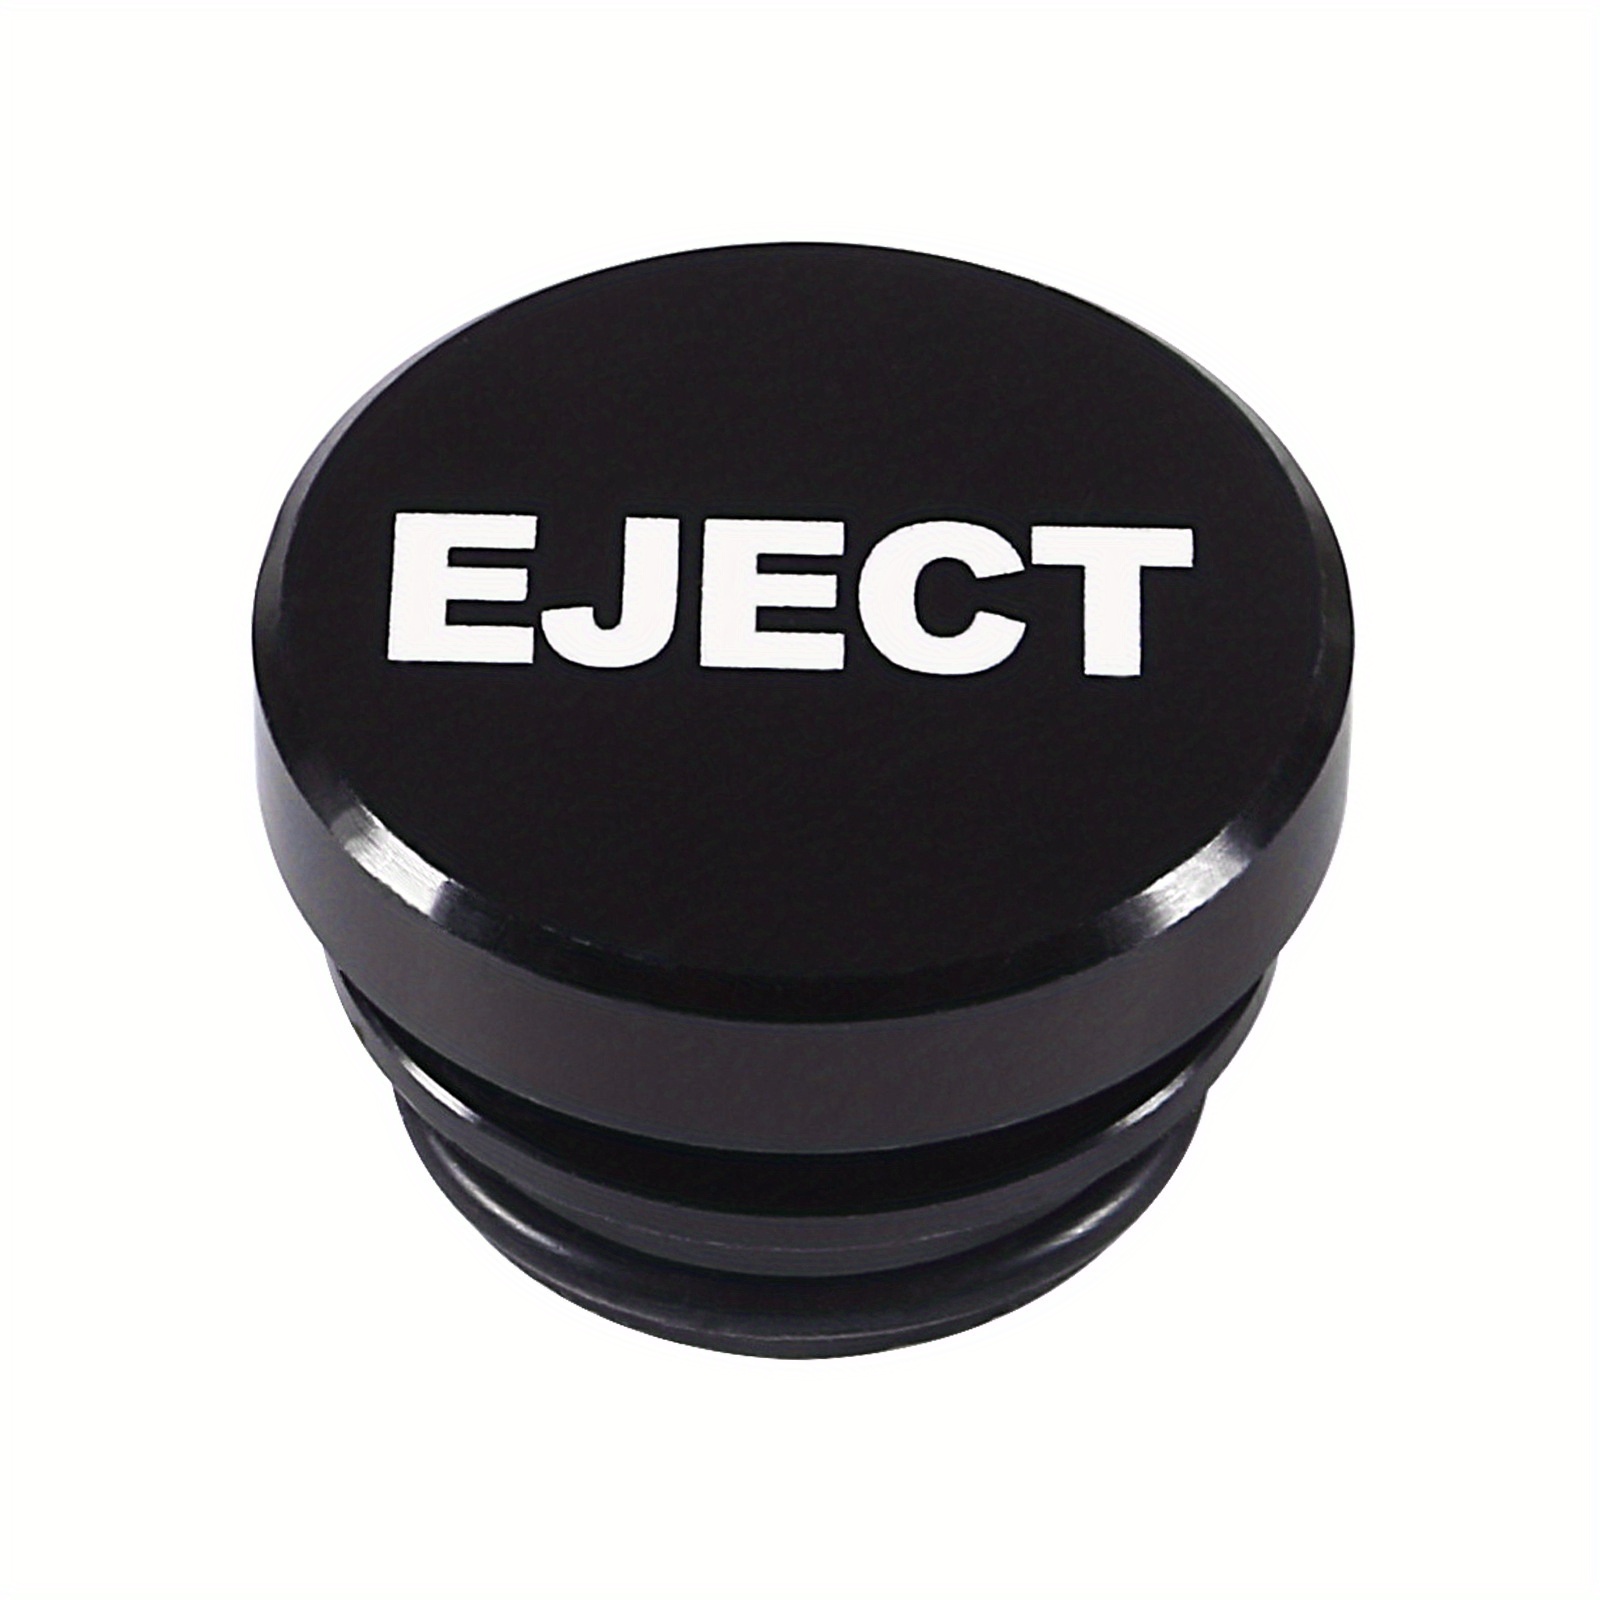 12v Cigarette Lighter Socket With Eject Button Cigarette Lighter